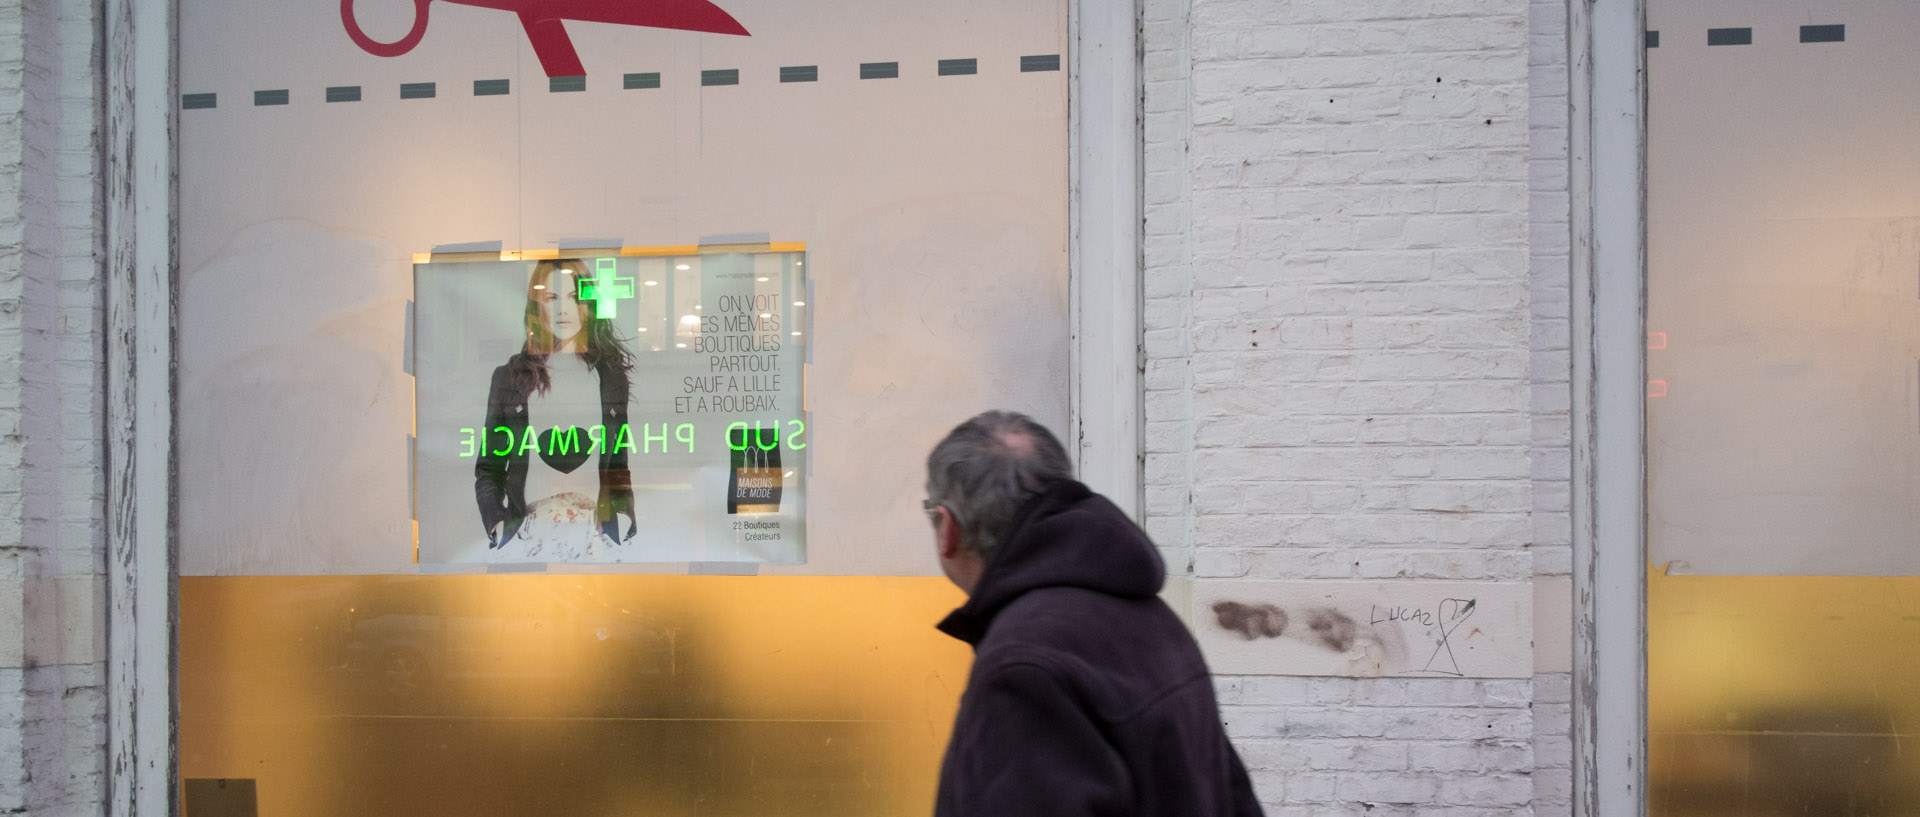 Homme passant devant une vitrine, rue de faubourg des Postes, à Lille.